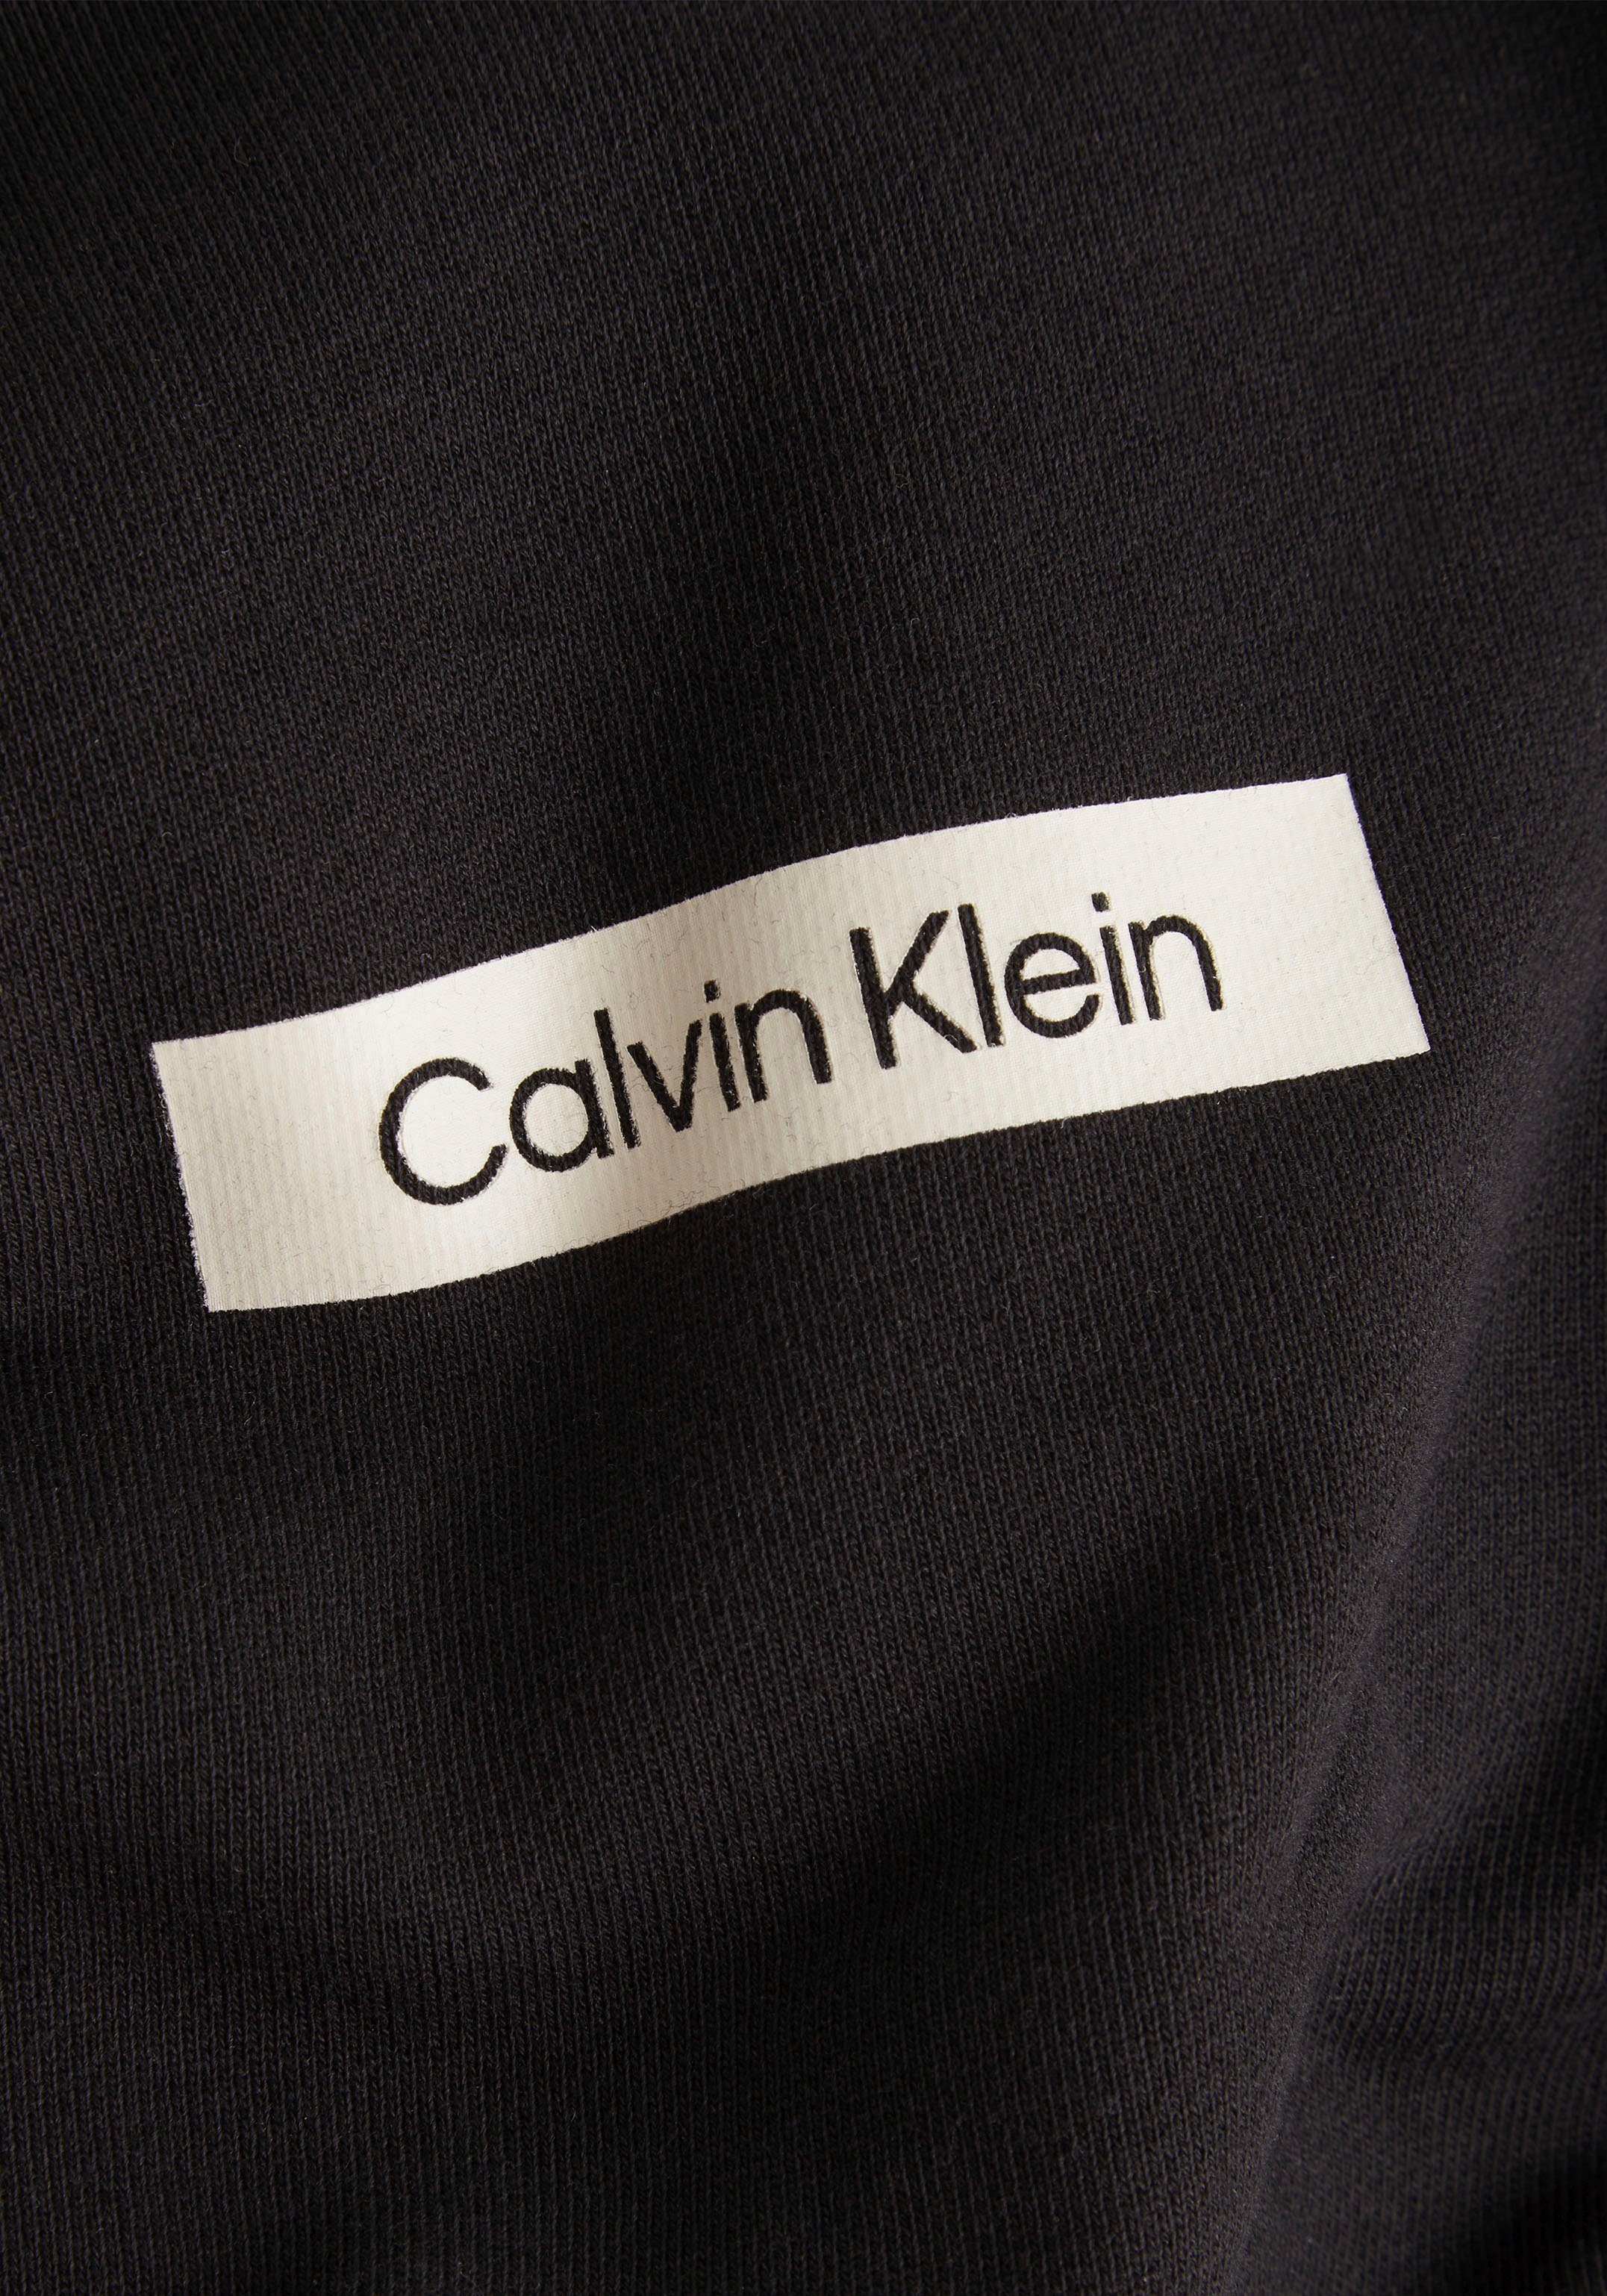 mit großem Calvin Rücken Kapuzensweatshirt schwarz Klein dem auf CK-Schriftzug